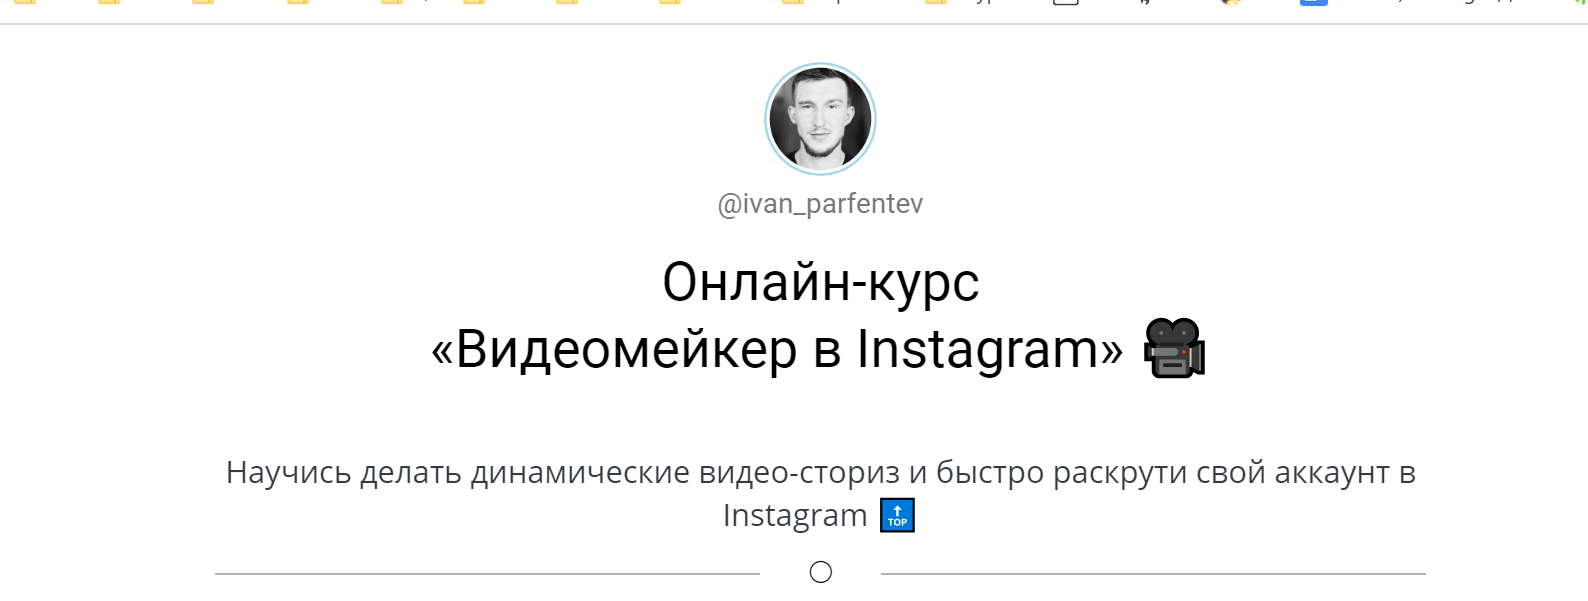 Видеомейкер в Instagram (2020) [Иван Парфентев]